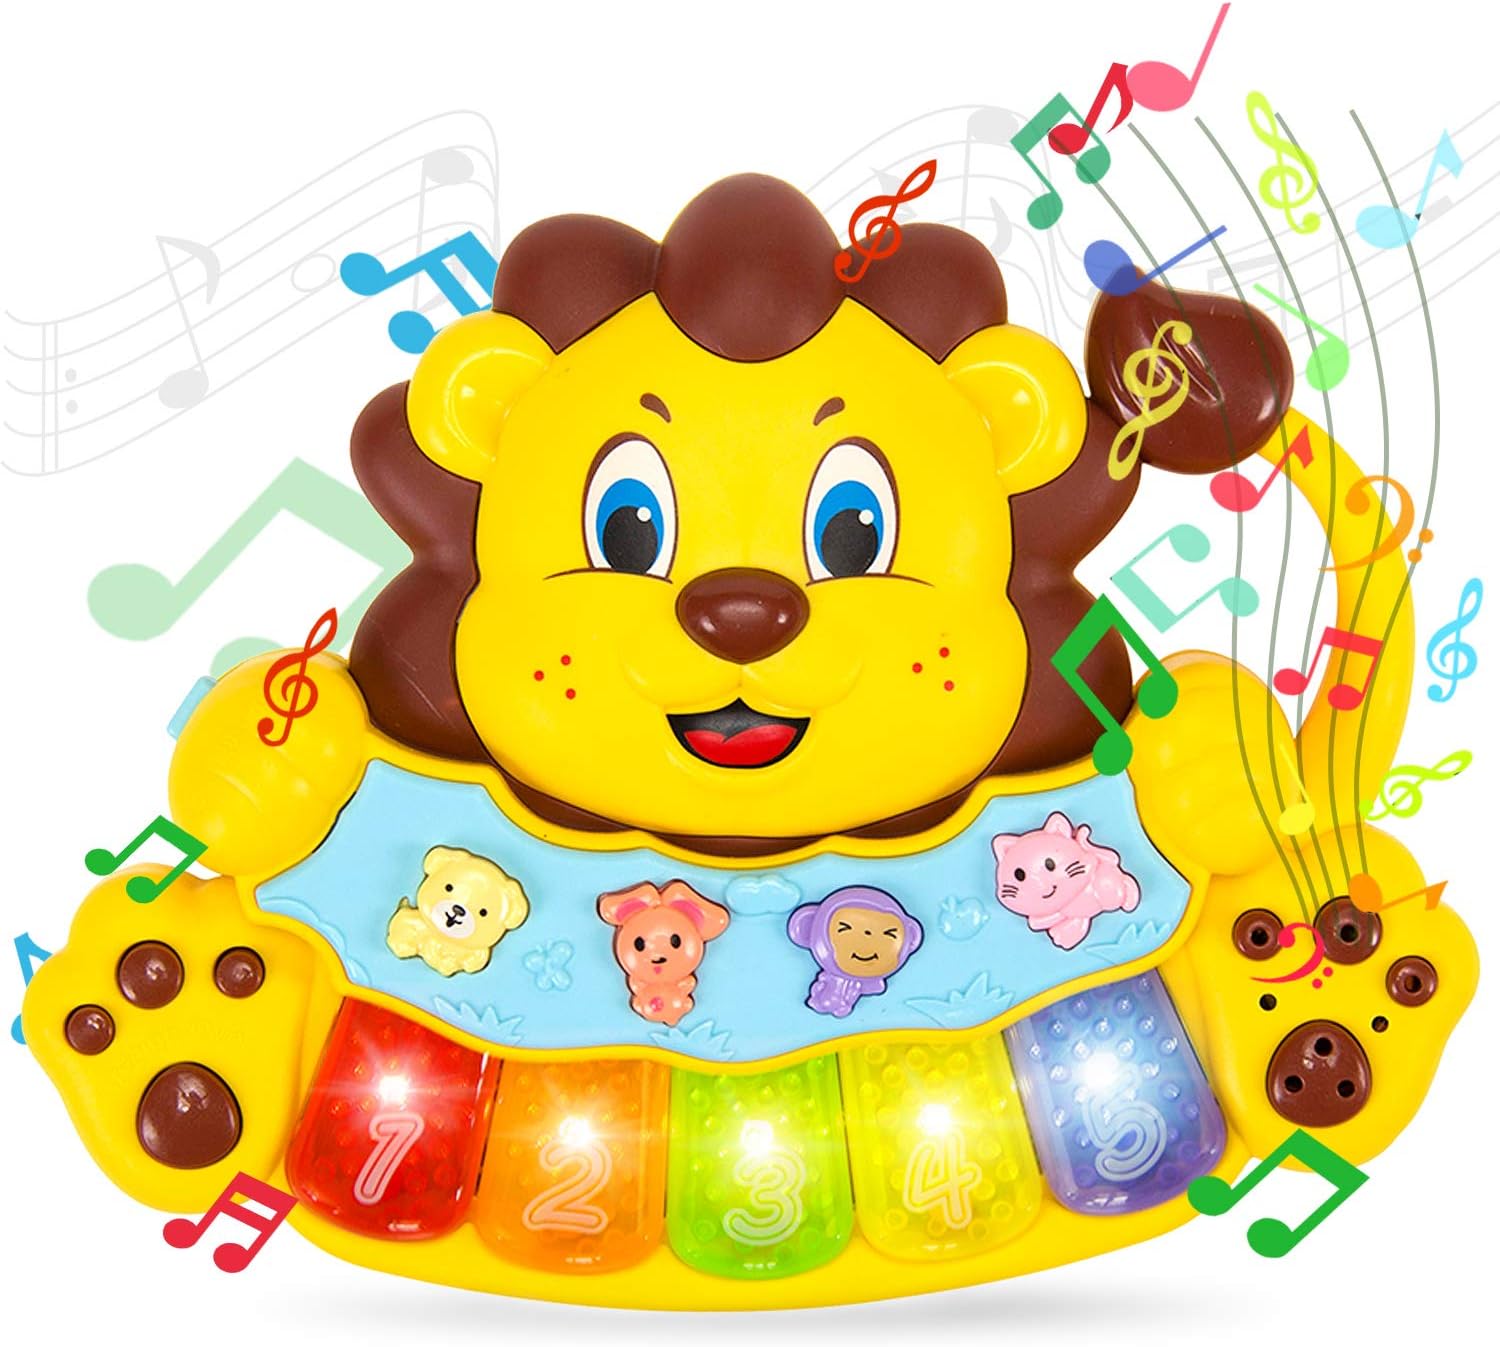 لعبة تعليمية على شكل اسد من ستيم لايف - لعبة موسيقية للاطفال والرضع بتصميم بيانو مضيء - كيبورد موسيقي يحتوي على 5 مفاتيح مرقمة - مثالية للاولاد والبنات من عمر سنتين